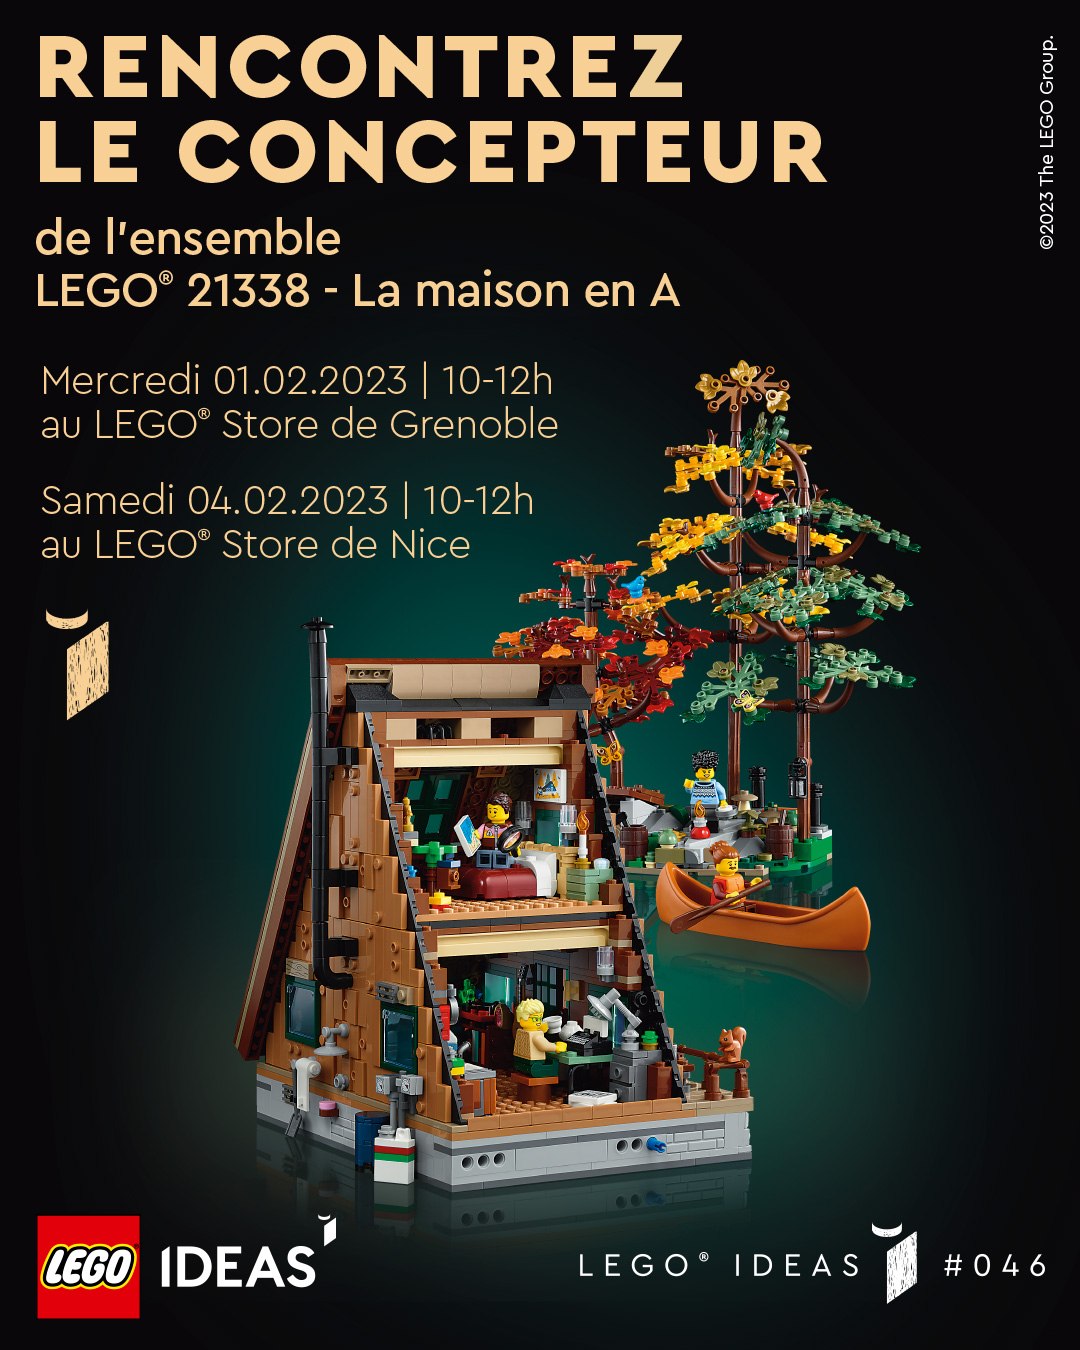 LEGO Ideas 21338 A-Frame Cabin: temui desainer kipas di Toko Grenoble dan Nice